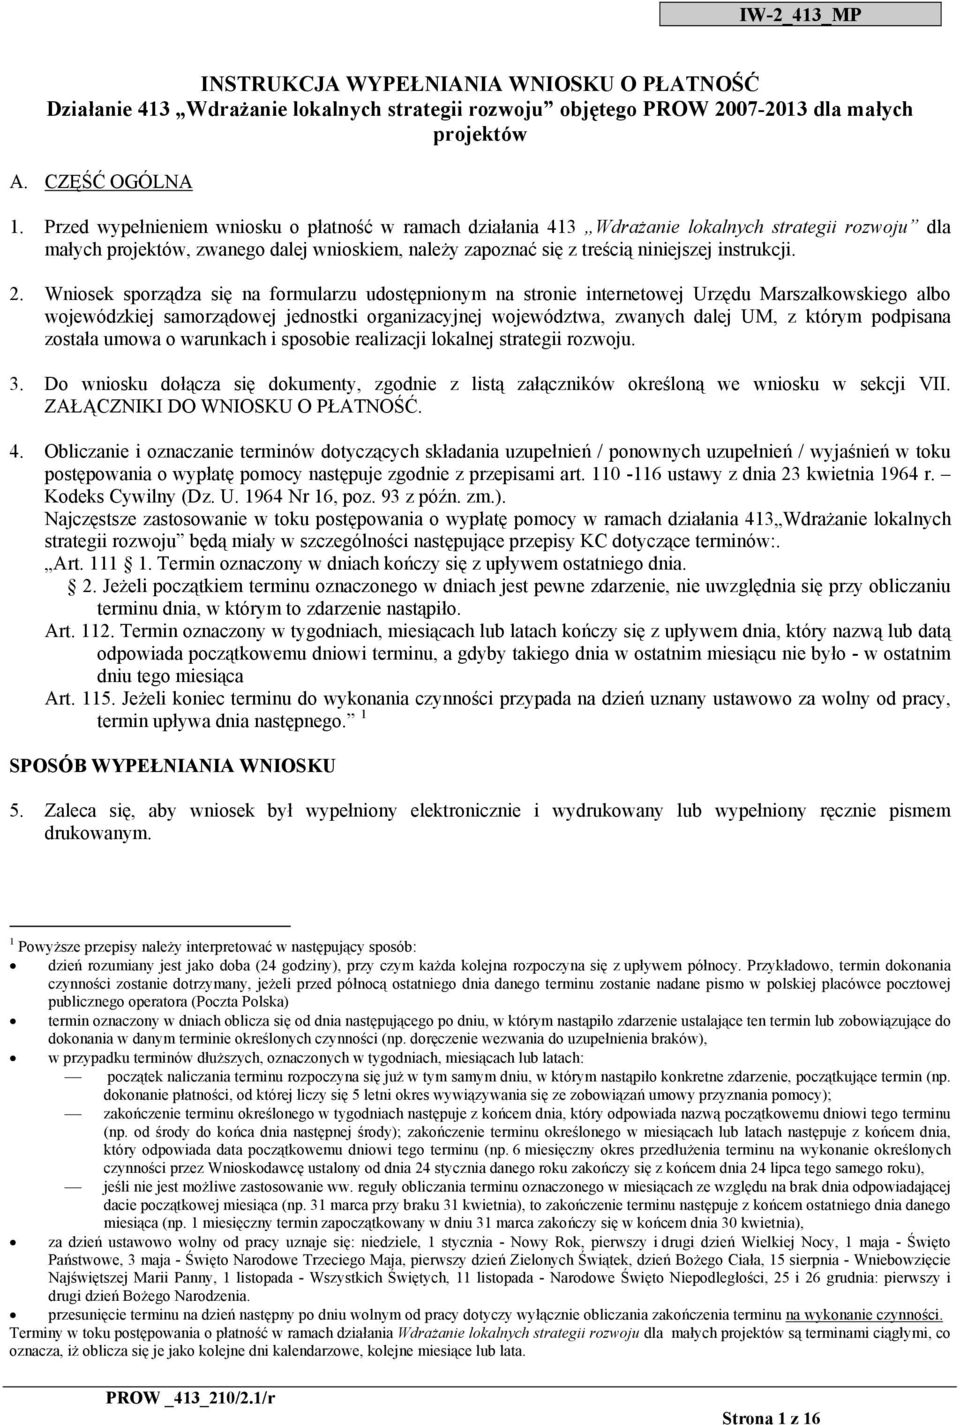 2. Wniosek sporządza się na formularzu udostępnionym na stronie internetowej Urzędu Marszałkowskiego albo wojewódzkiej samorządowej jednostki organizacyjnej województwa, zwanych dalej UM, z którym